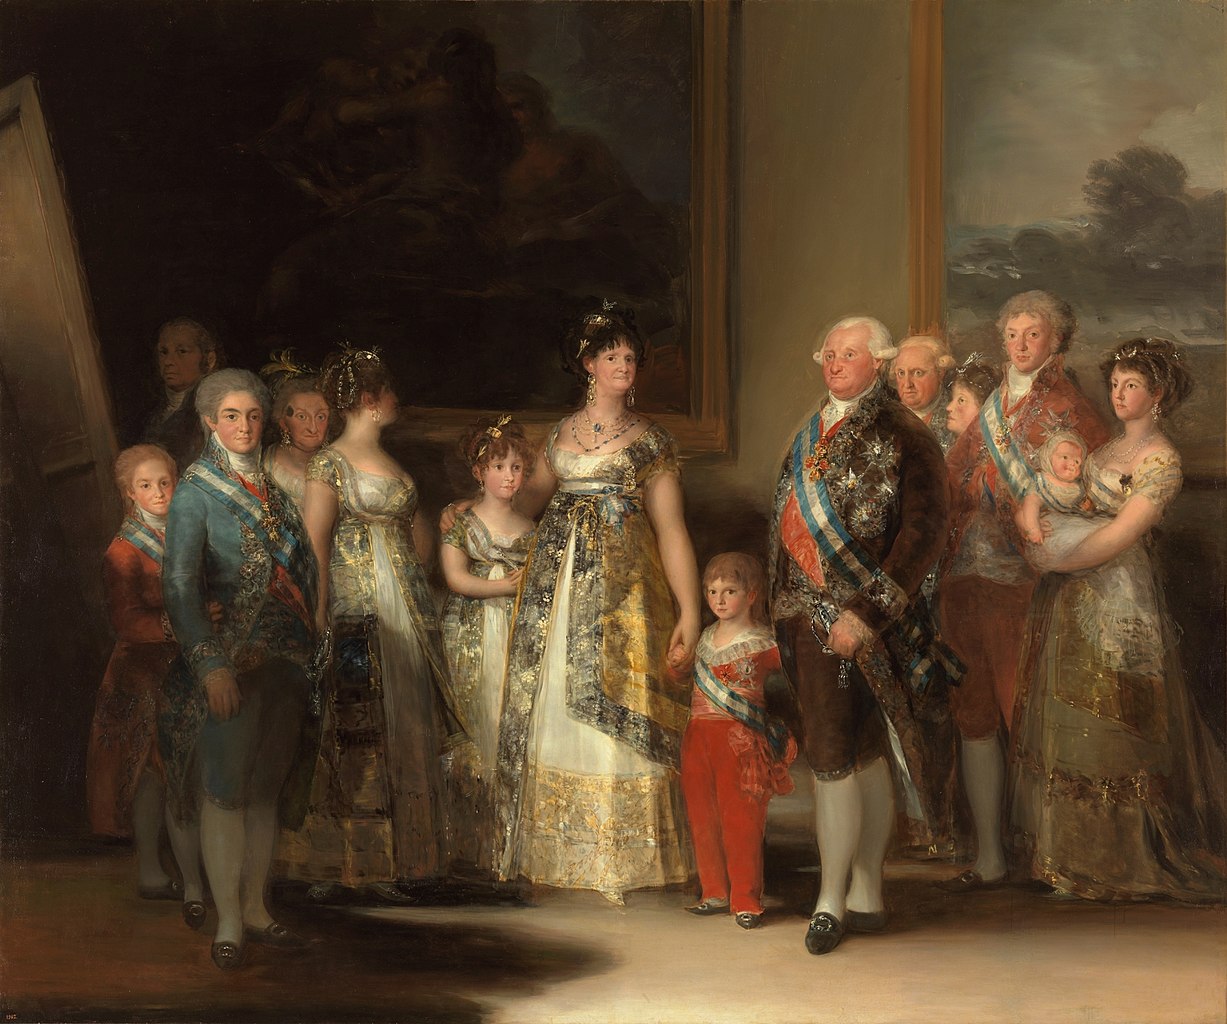 스페인 국왕 찰스 4세Charles IV, 1788~1808 재위와 그의 가족 초상화다. 그의 아이들은 누구를 닮았을까. 	Francisco Goya, '찰스 4세와 그의 가족', 1800~1801, 캔버스에 오일,  280 × 336 cm, 마드리드  프라도미술관 소장.